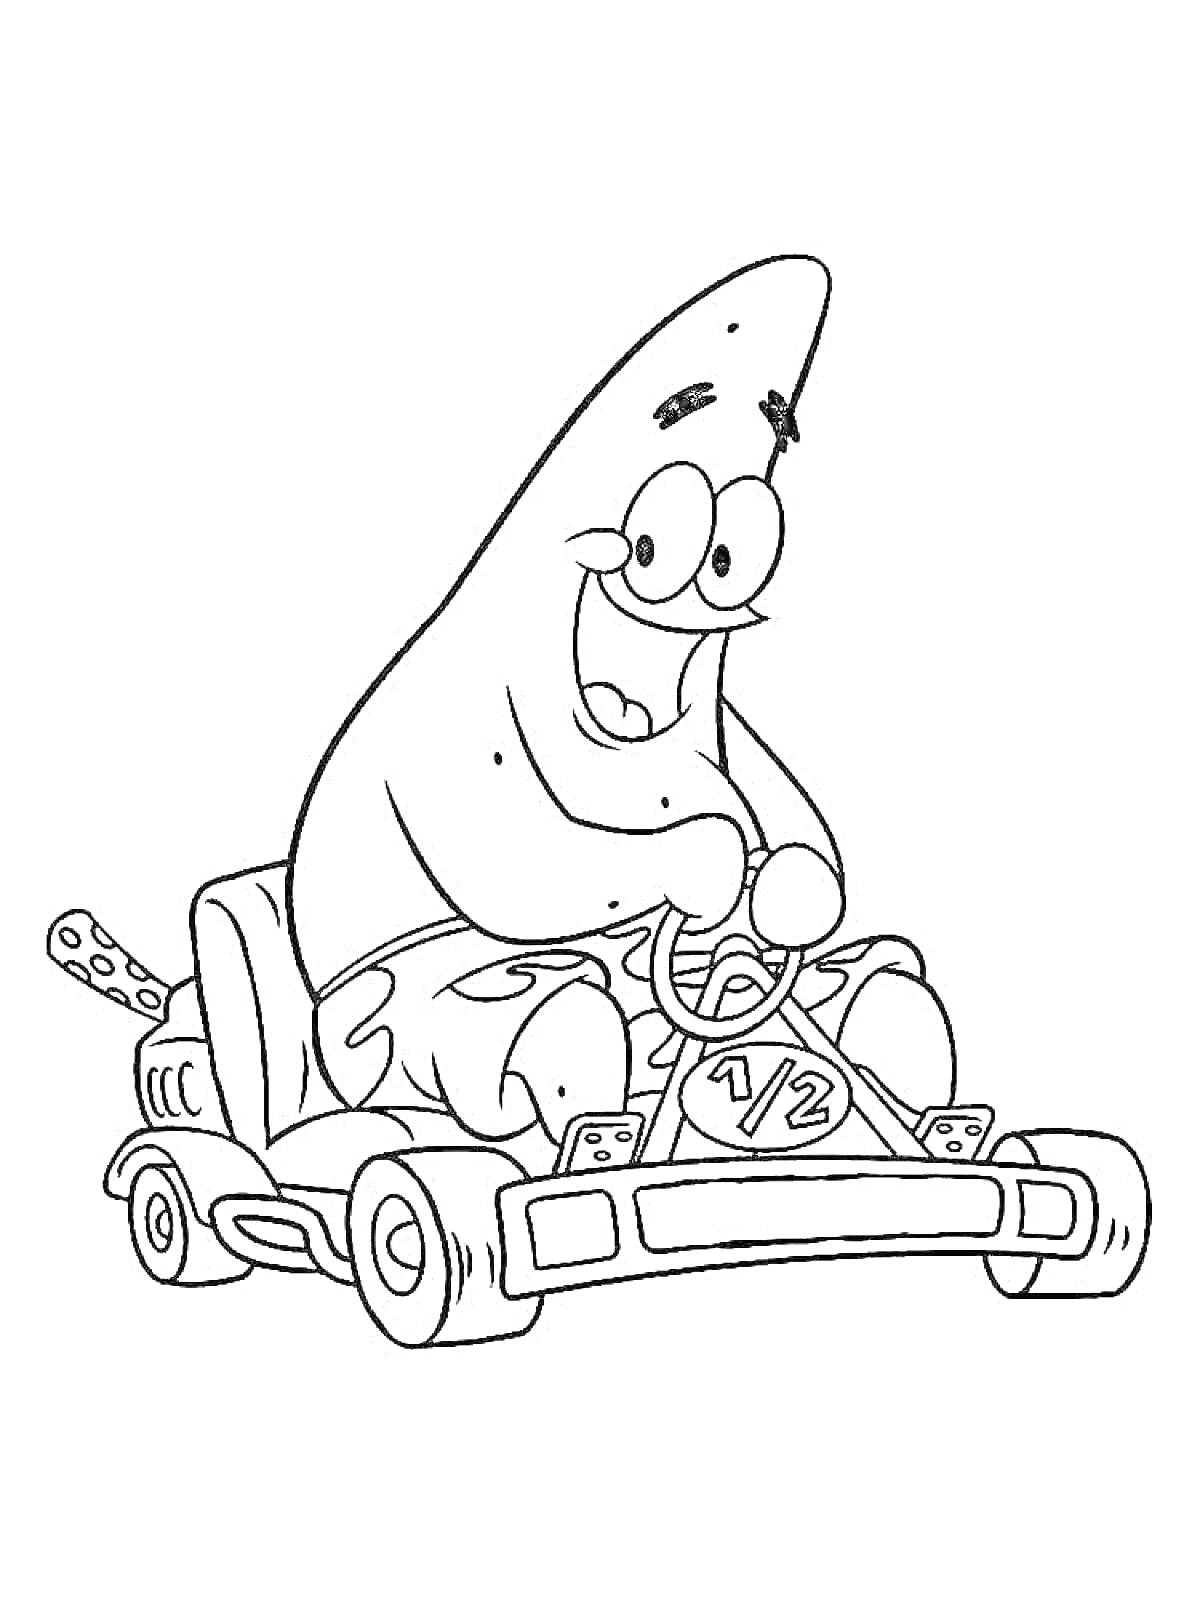 Раскраска Патрик с радостным выражением лица за рулем гоночного карта с номером 1/2